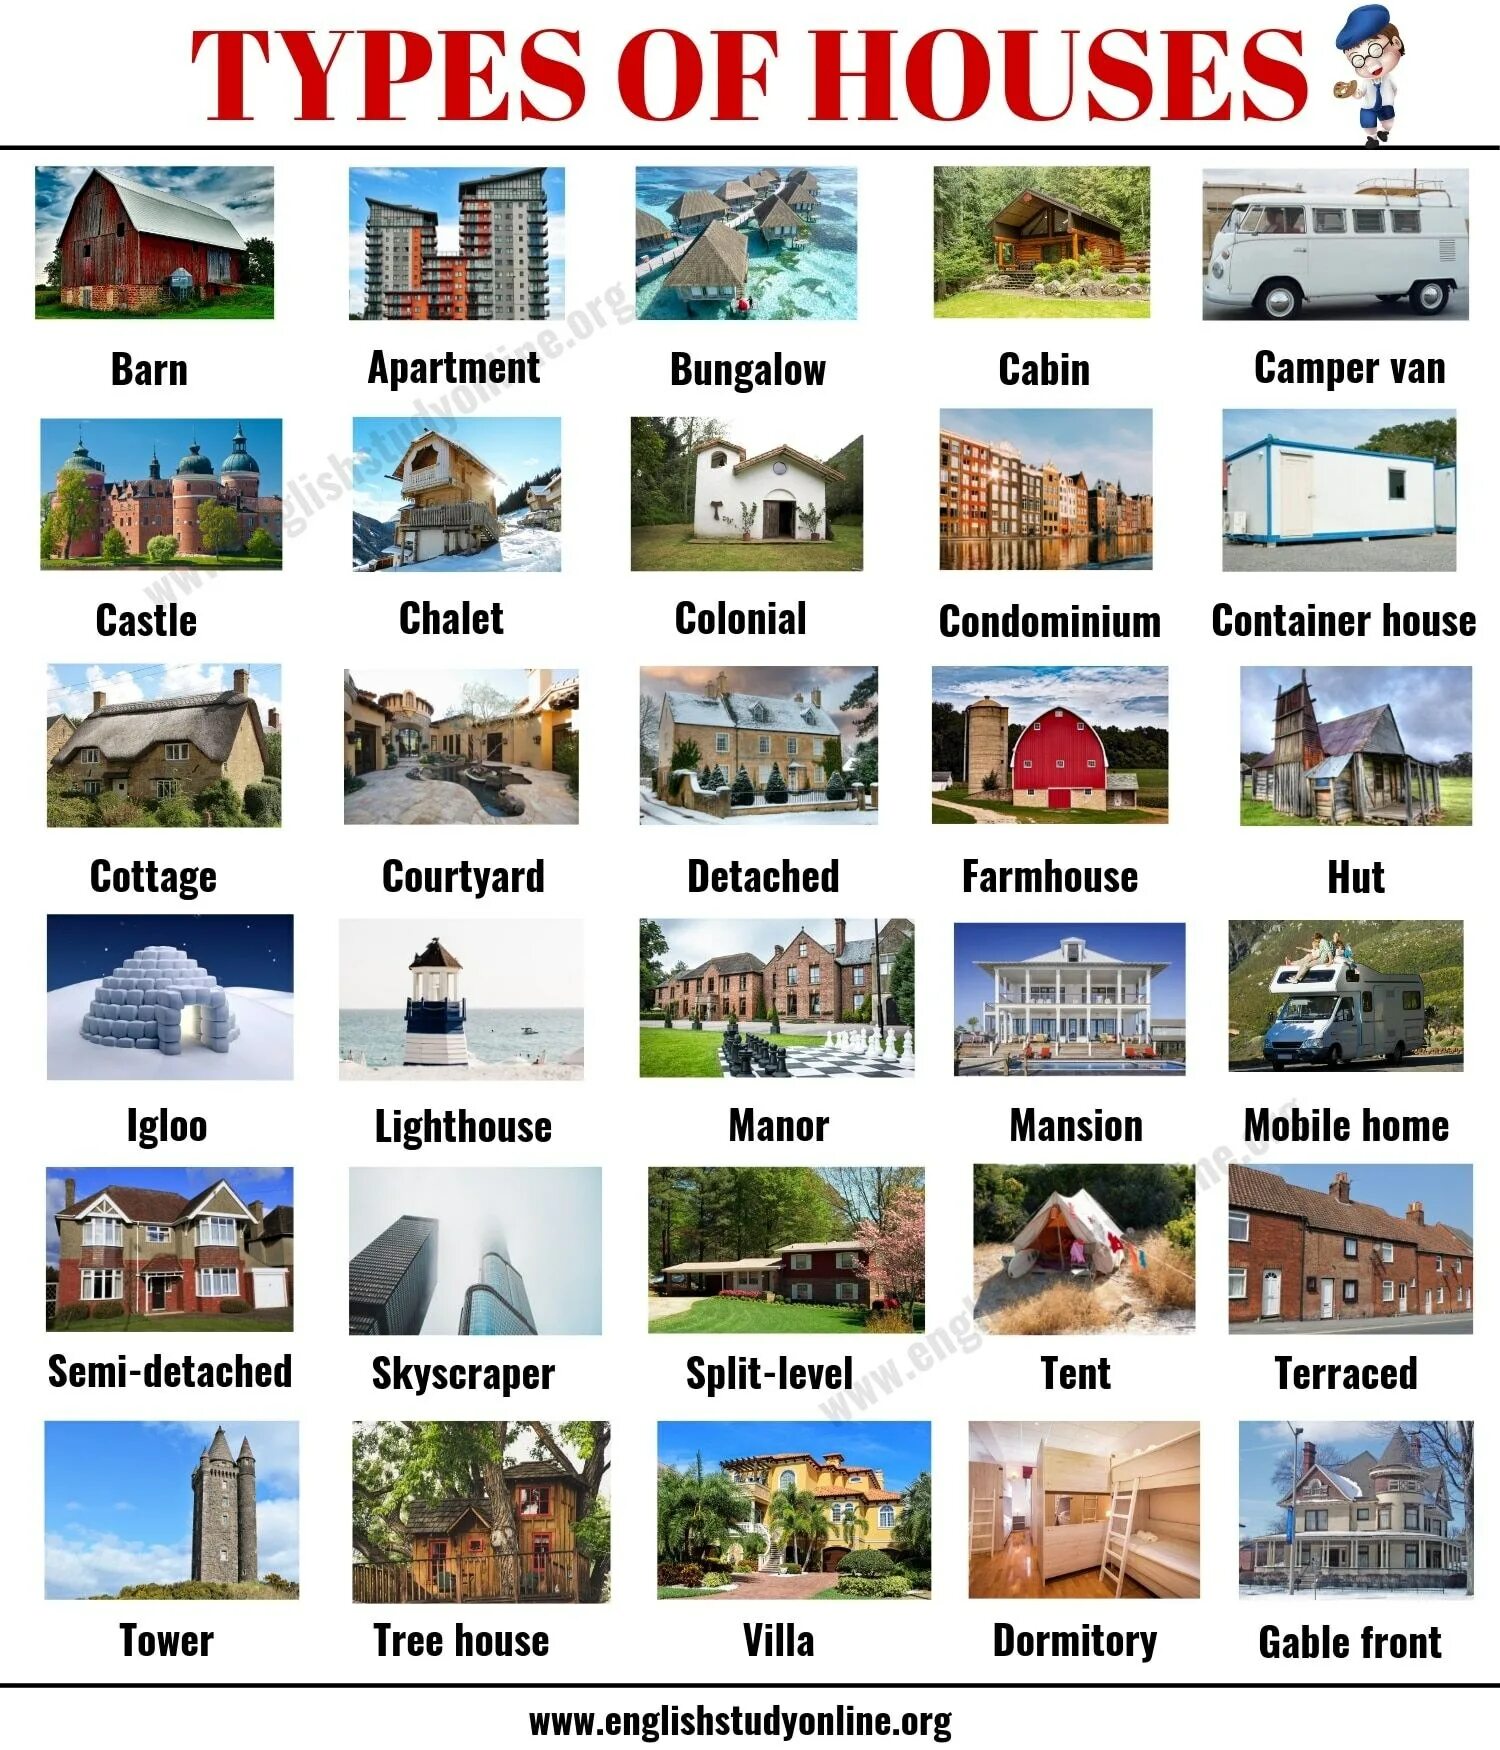 Types of Houses список. Типы домов по английскому. Виды домов на английском. Type of Houses тема по английскому.